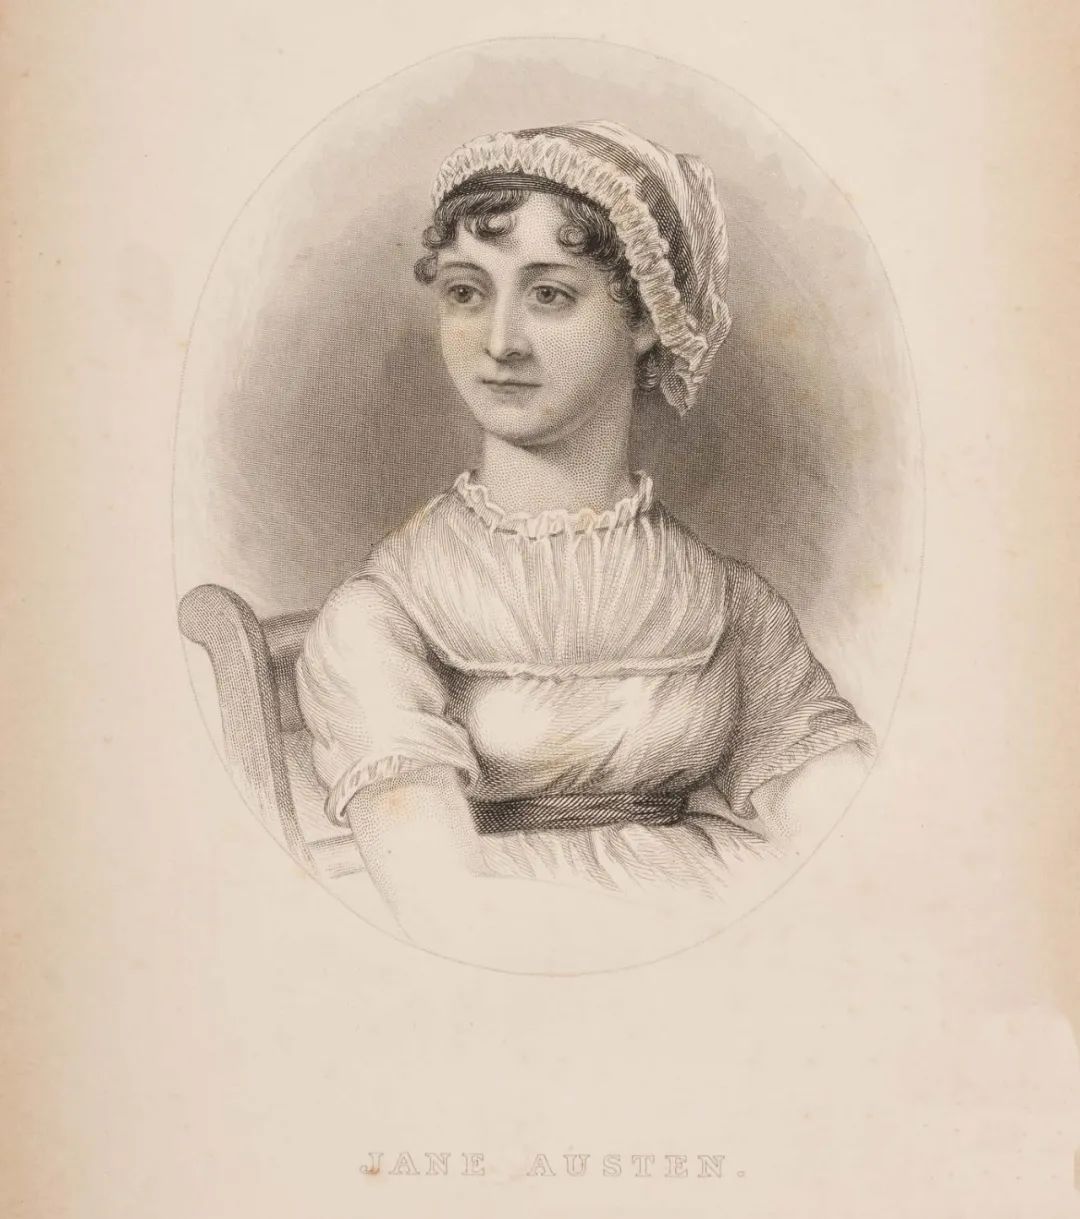 简·奥斯汀（Jane Austen，1775－1817），英国著名小说家，出生于汉普郡斯蒂文顿镇的一个牧师家庭。